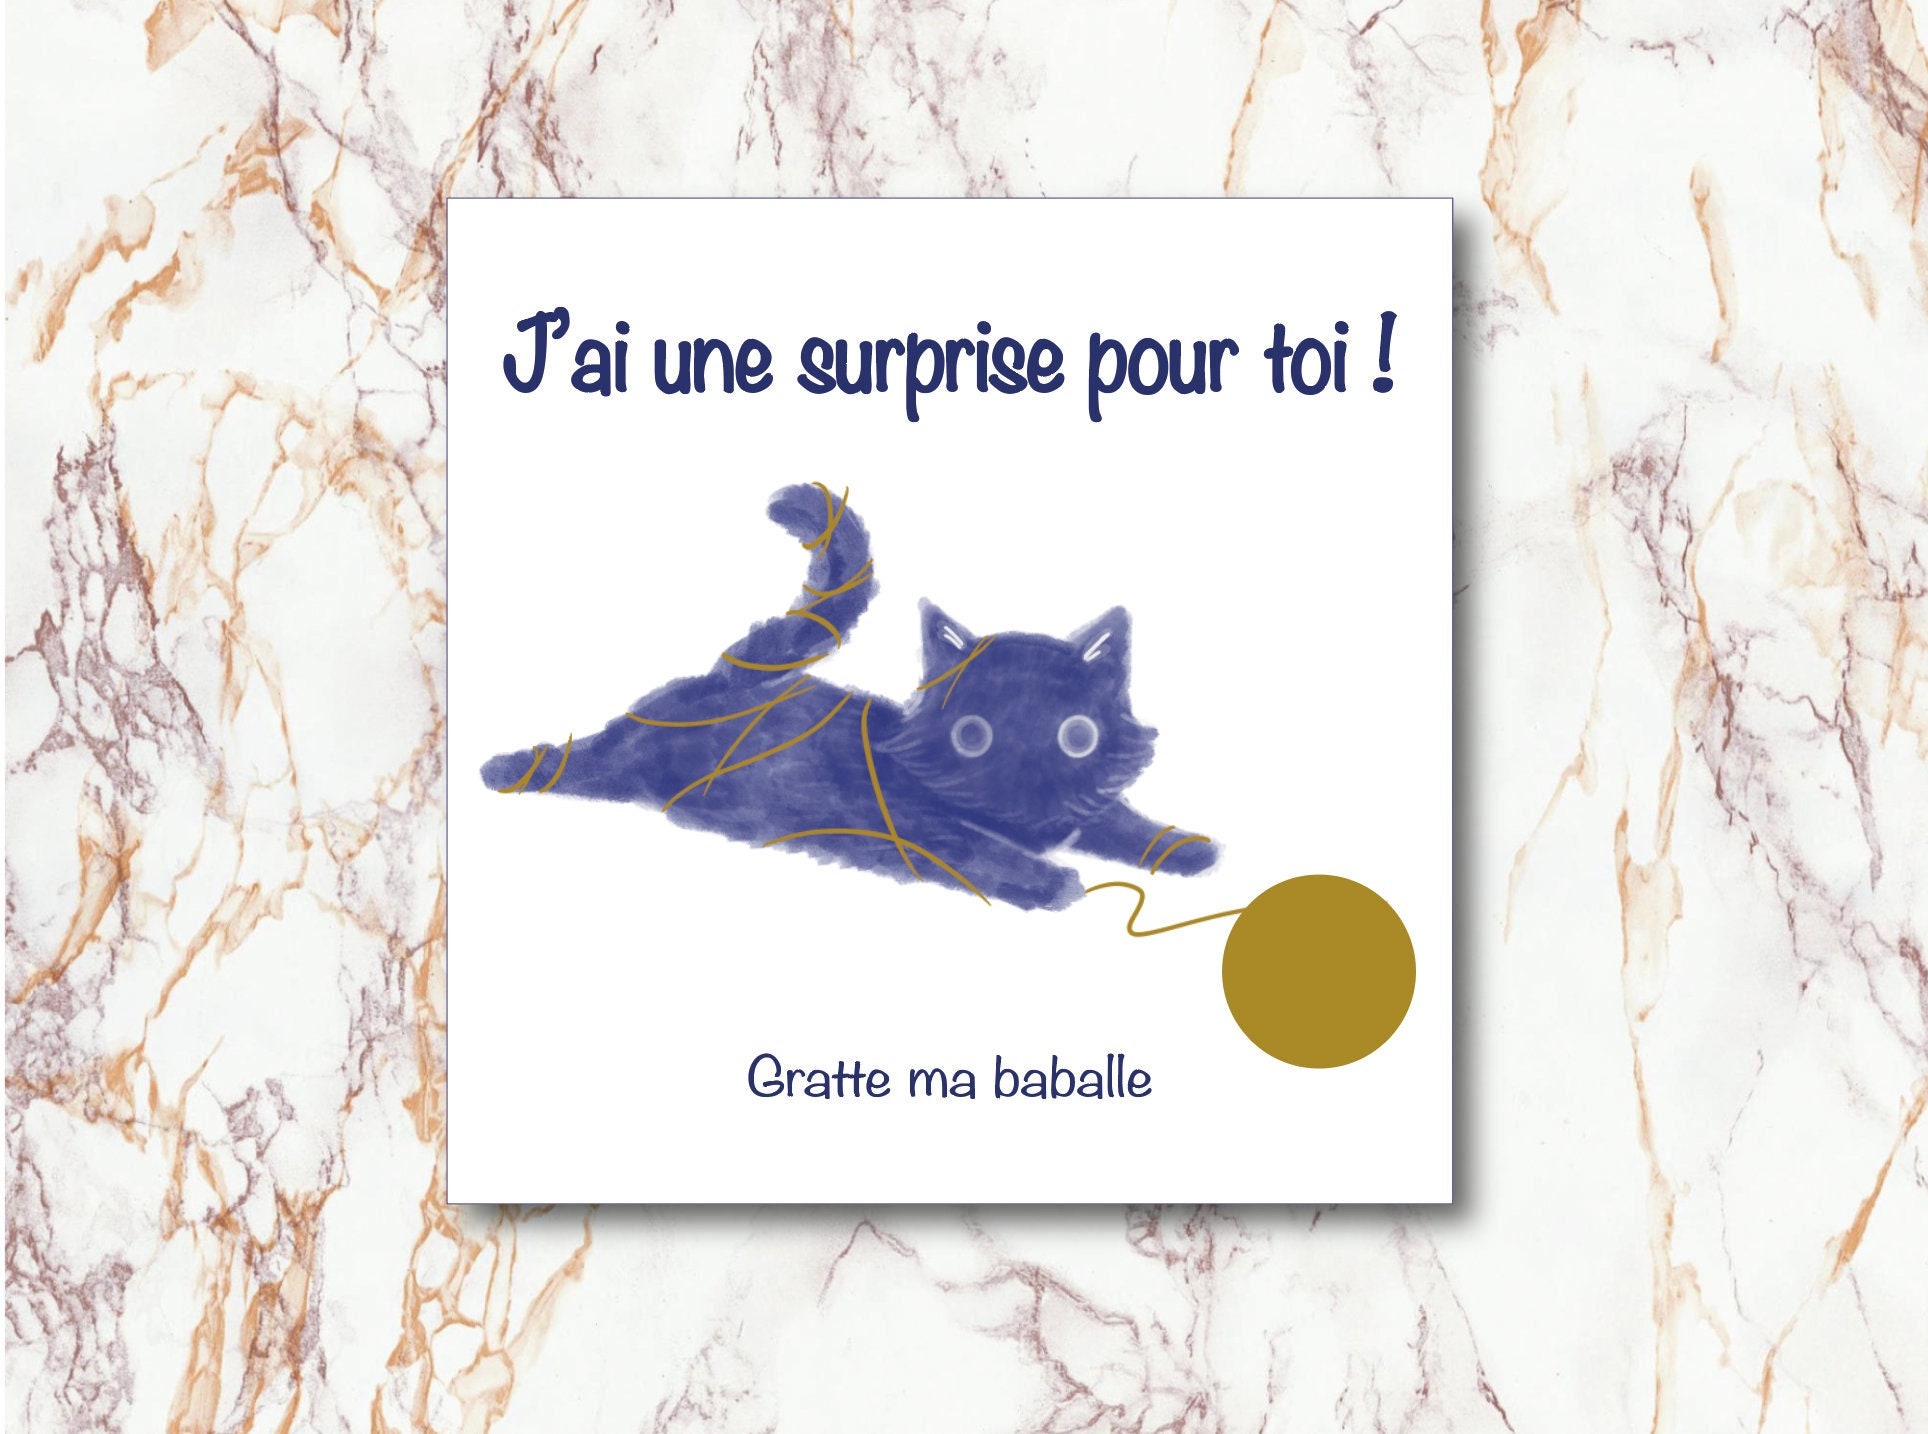 Cartes d'invitations anniversaire - chat – La picorette